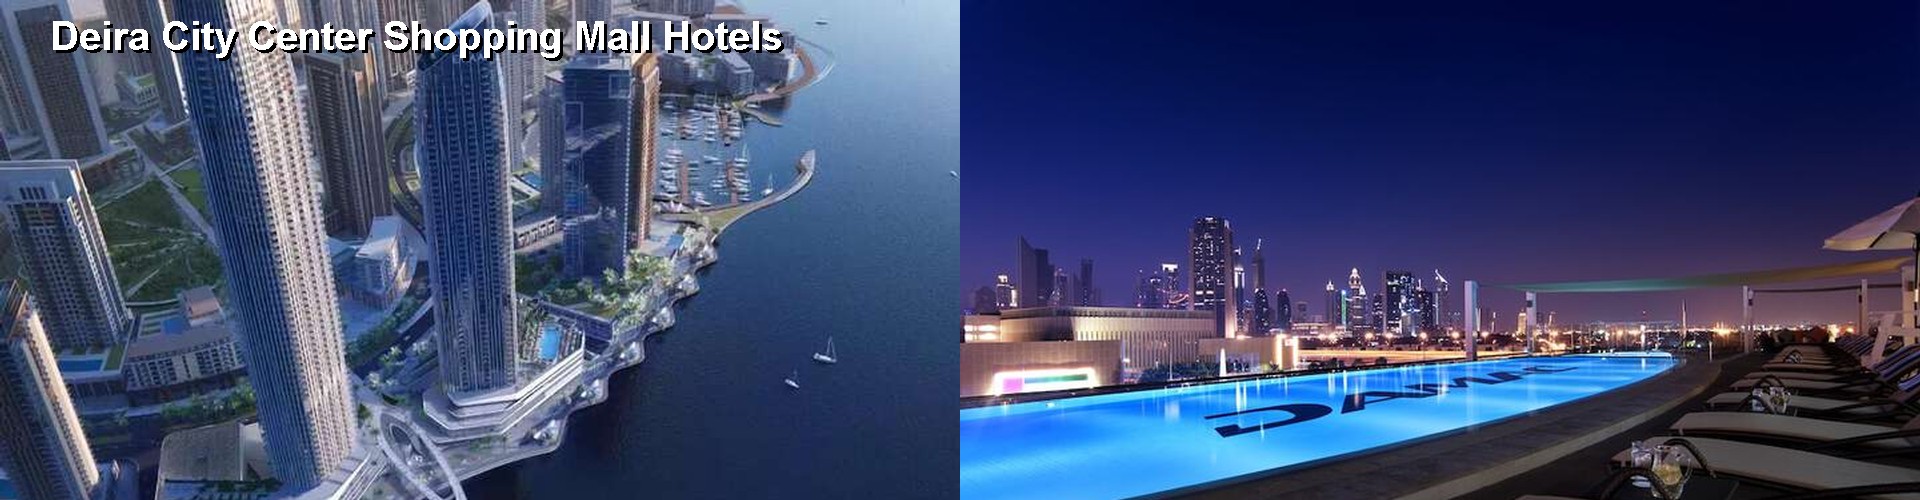 5 Best Hotels near Deira City Center Shopping Mall